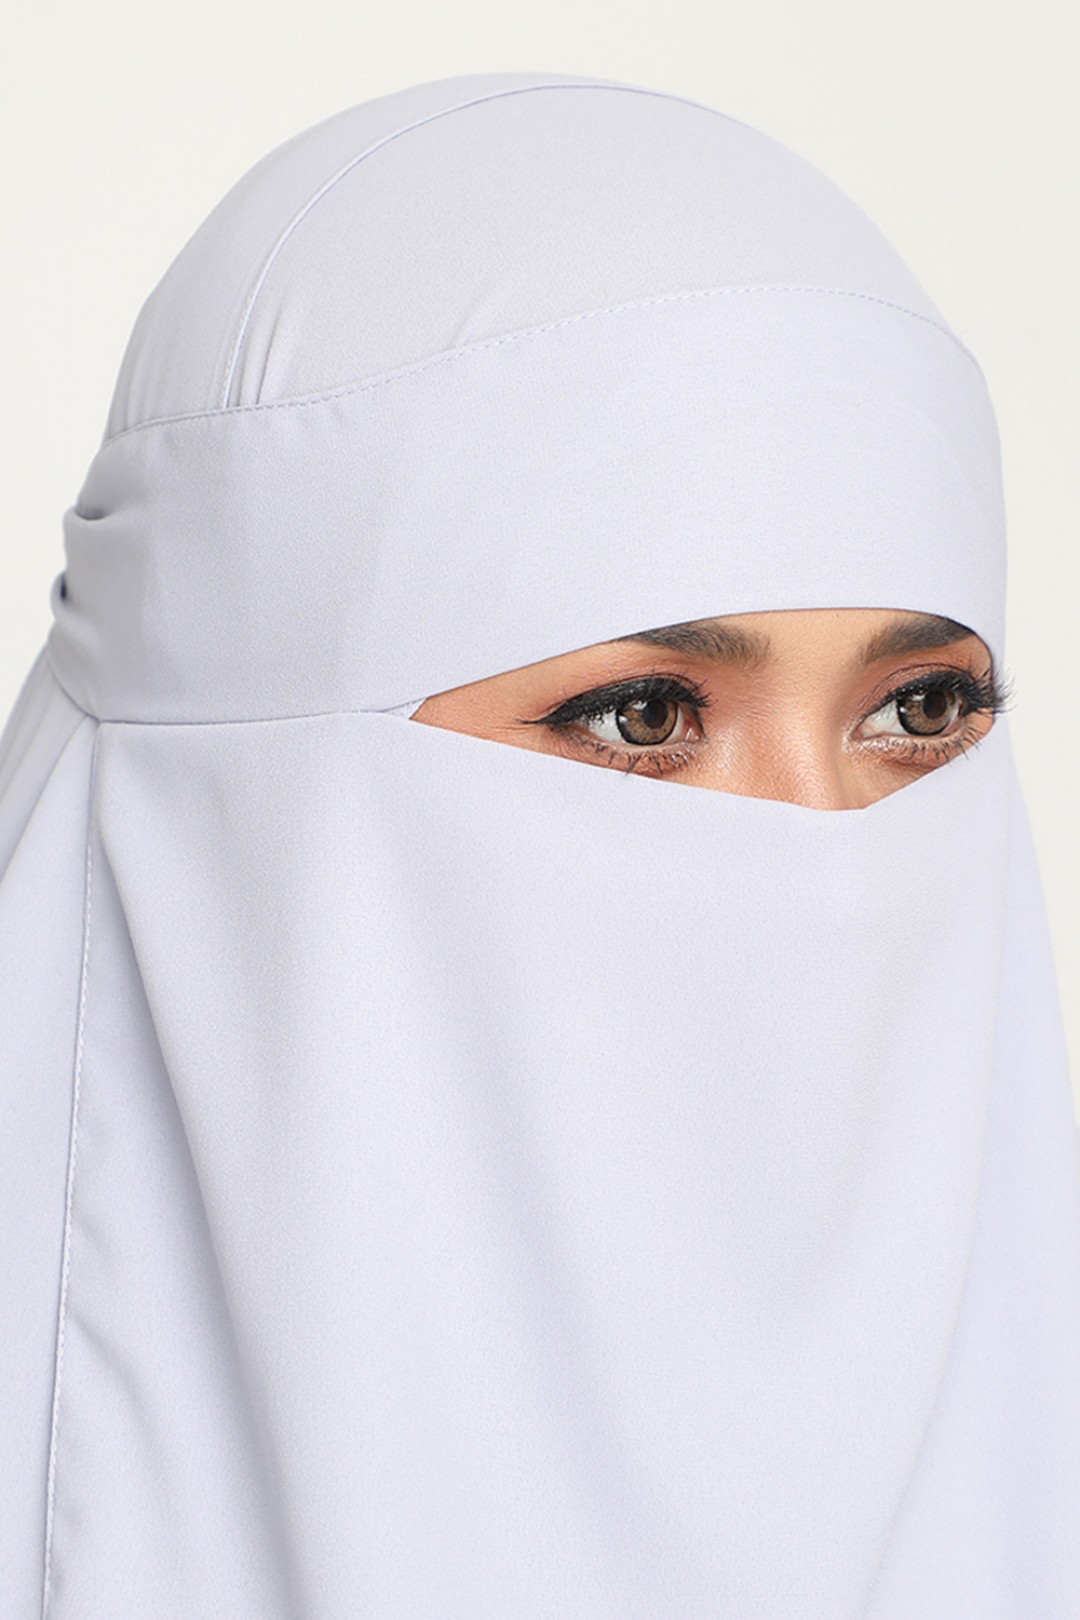 Niqab Iron Grey